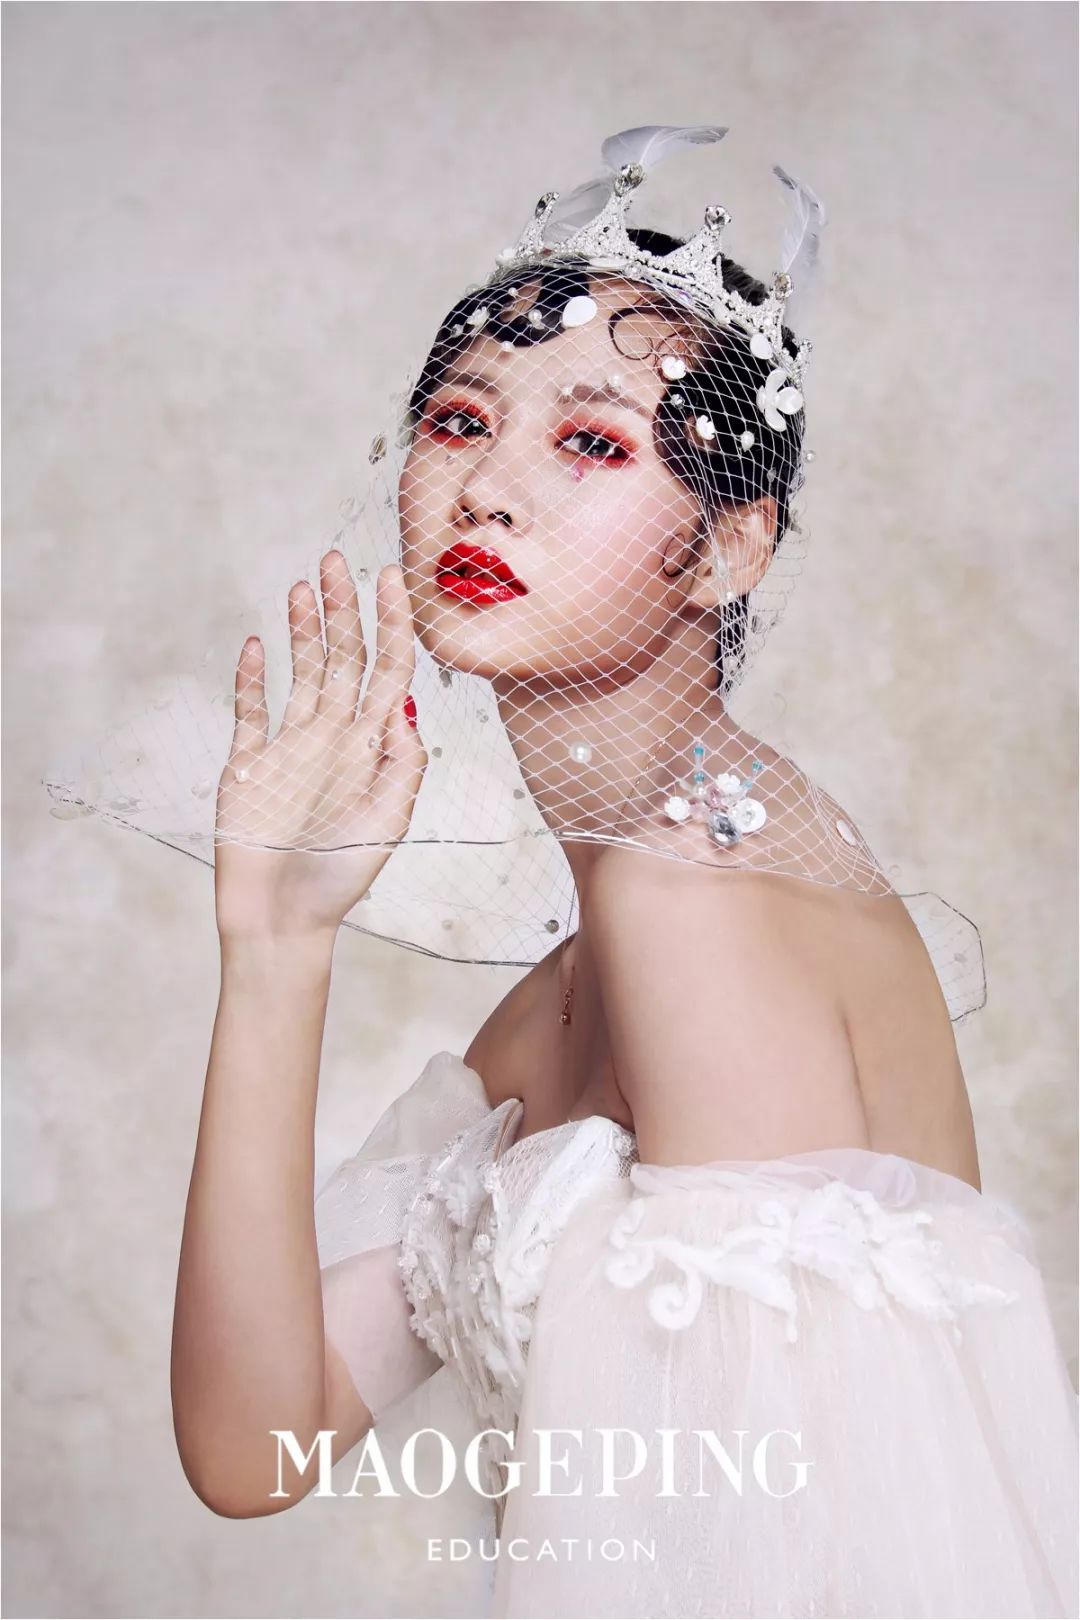 郑州毛戈平形象设计1116班新娘平面拍摄作品